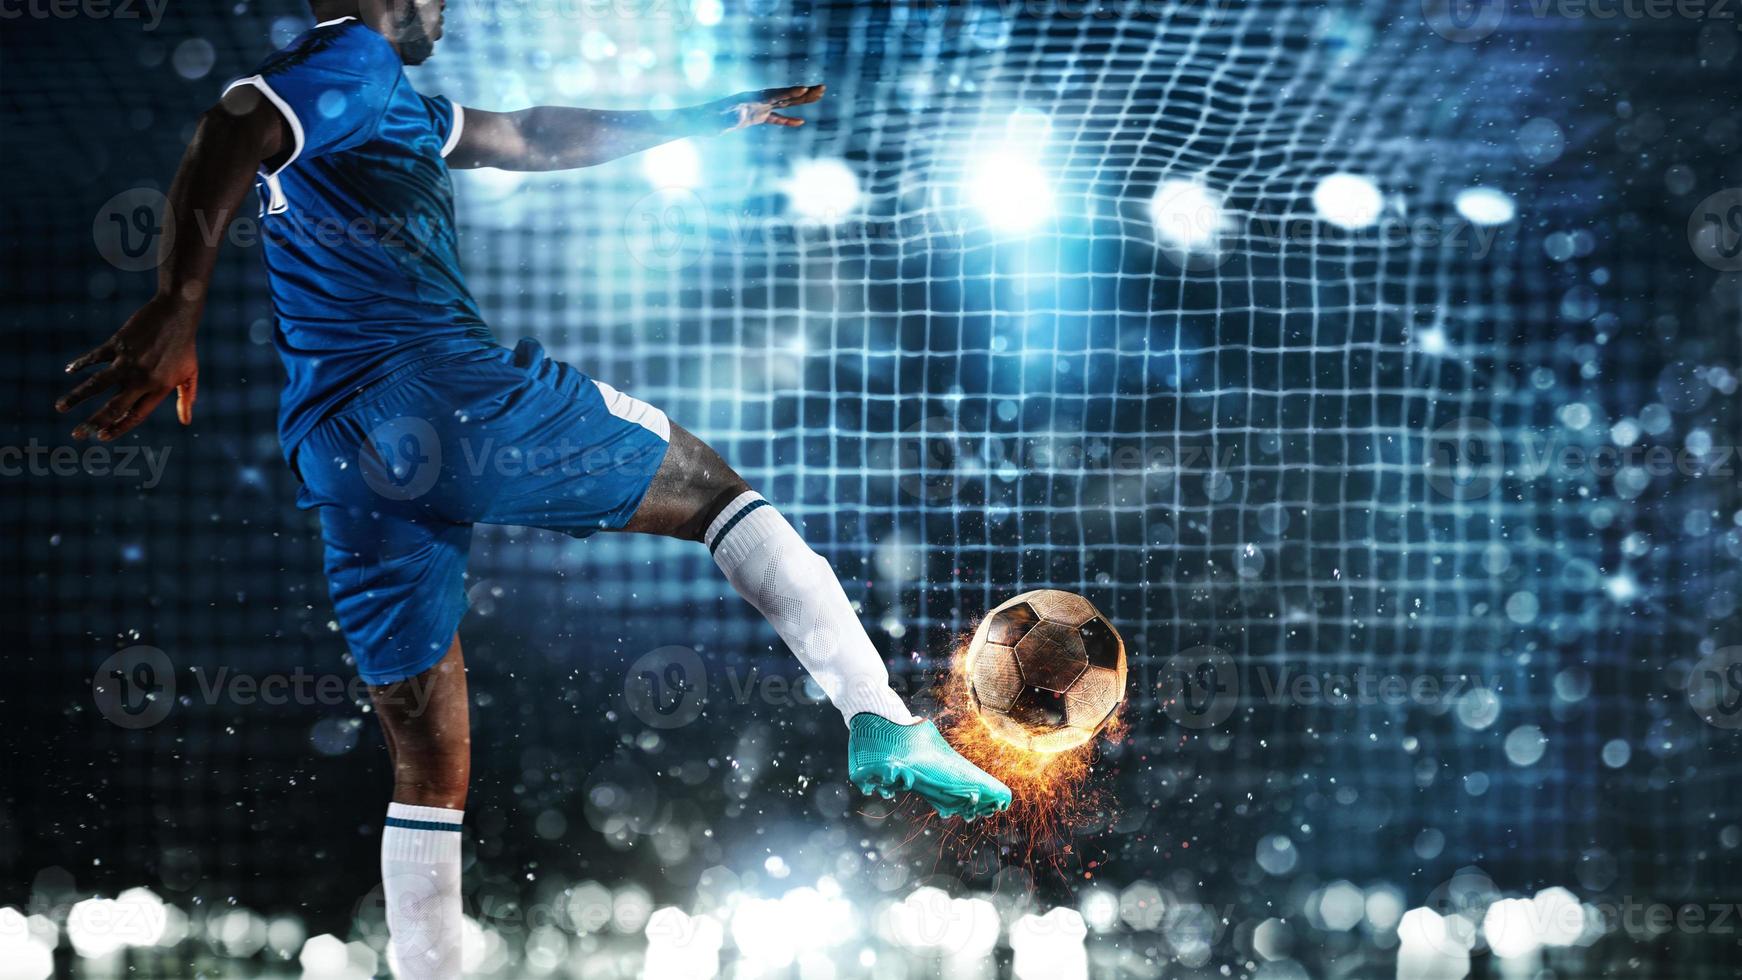 Amerikaans voetbal tafereel Bij nacht bij elkaar passen met speler schoppen de bal met macht foto